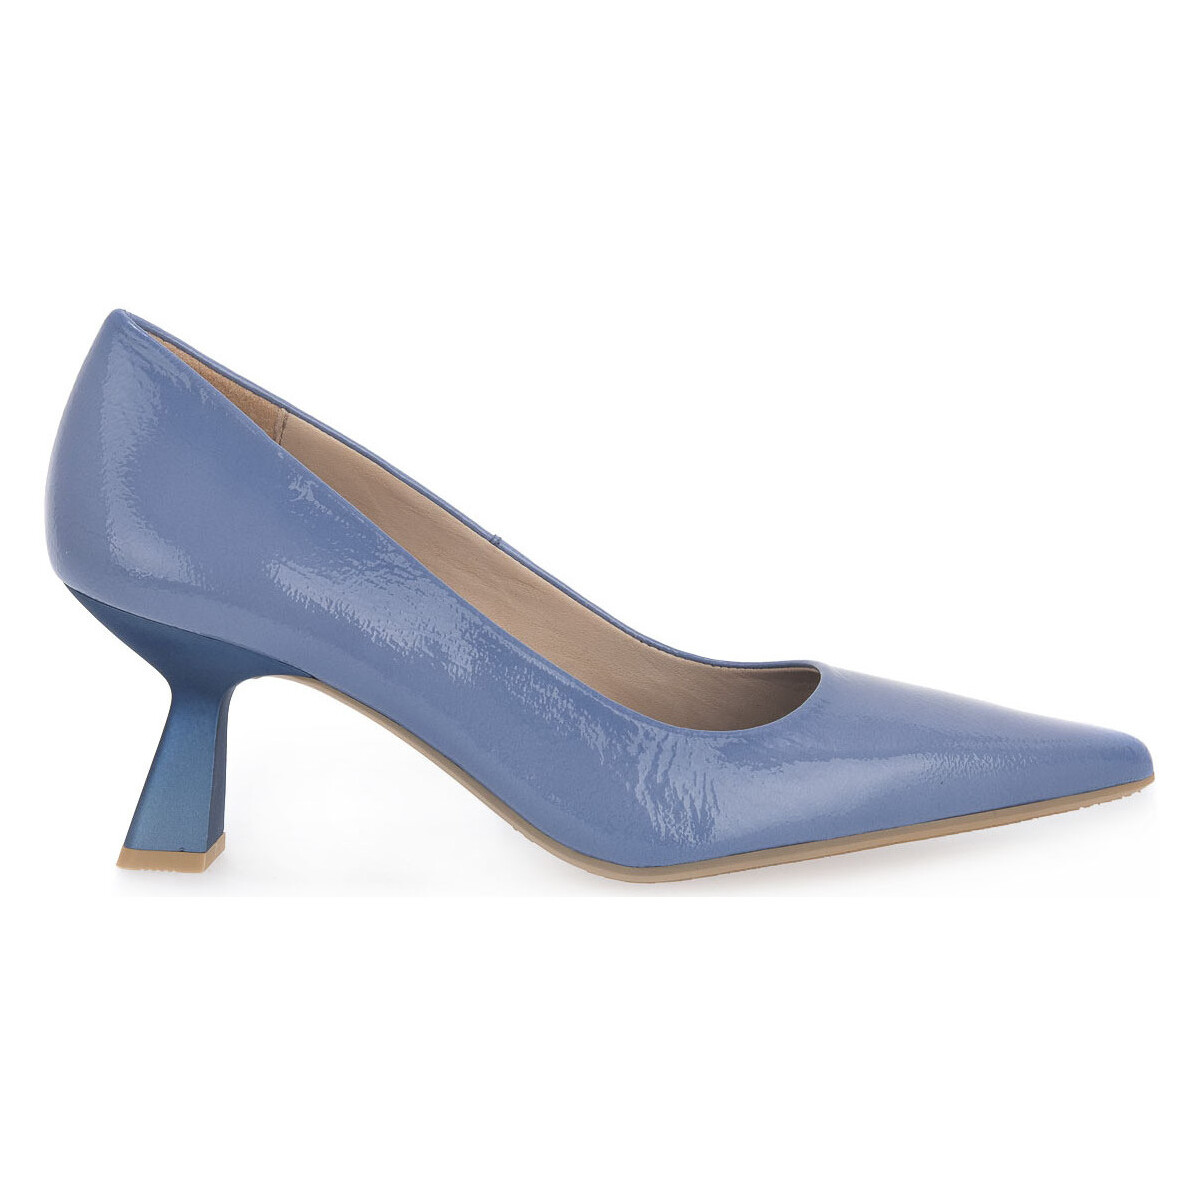 Zapatos Mujer Zapatos de tacón Hispanitas 001 AZURE SOHO Azul